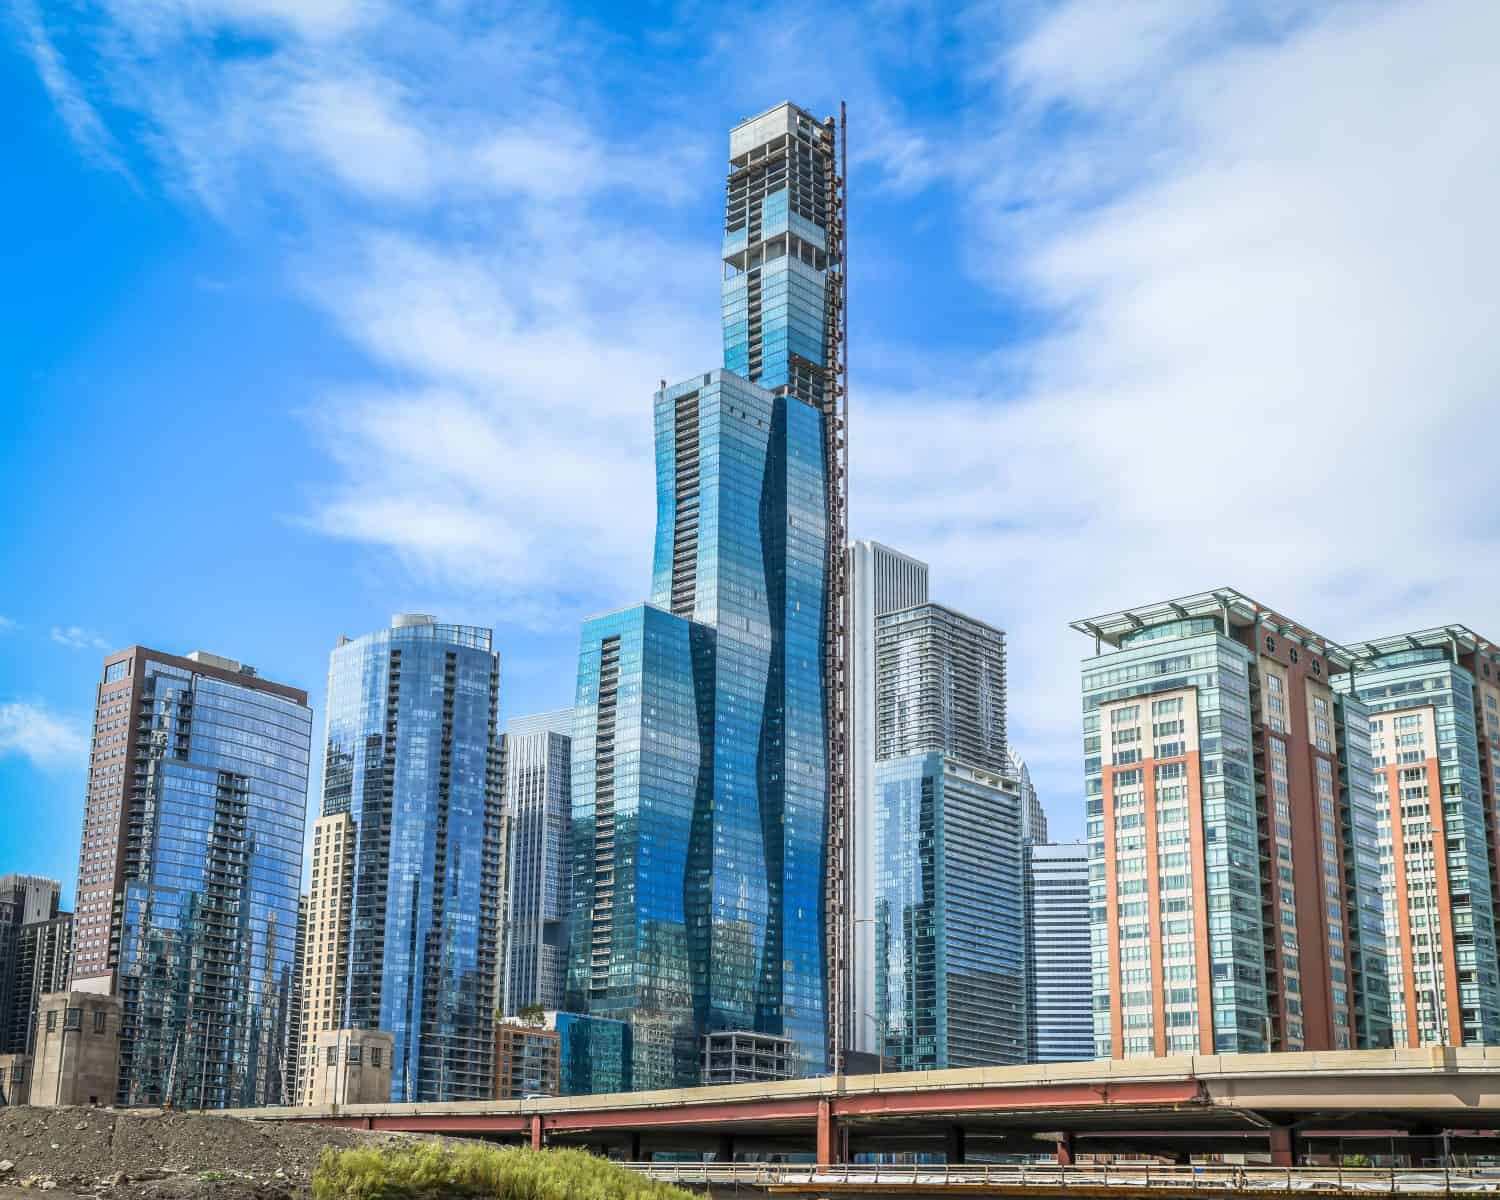 Una nuova torre residenziale di lusso super alta sorge a Chicago, IL.